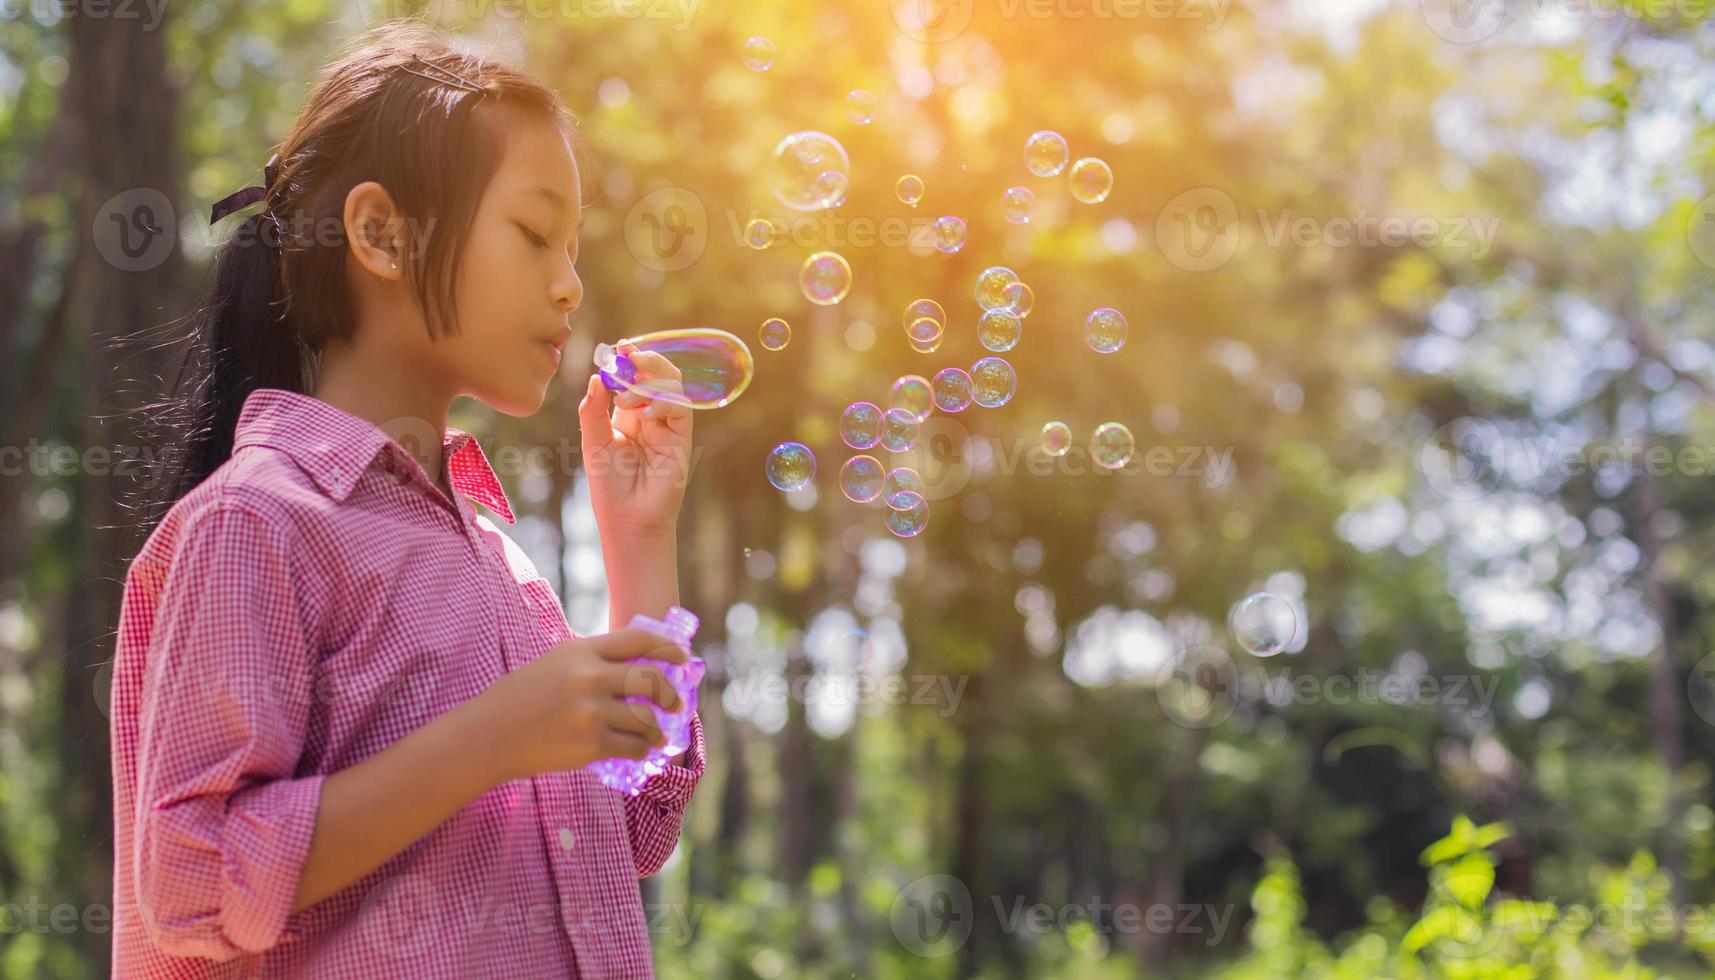 söt liten flicka som bär en rosa skjorta som blåser bubblor i parken, vintage stil. foto